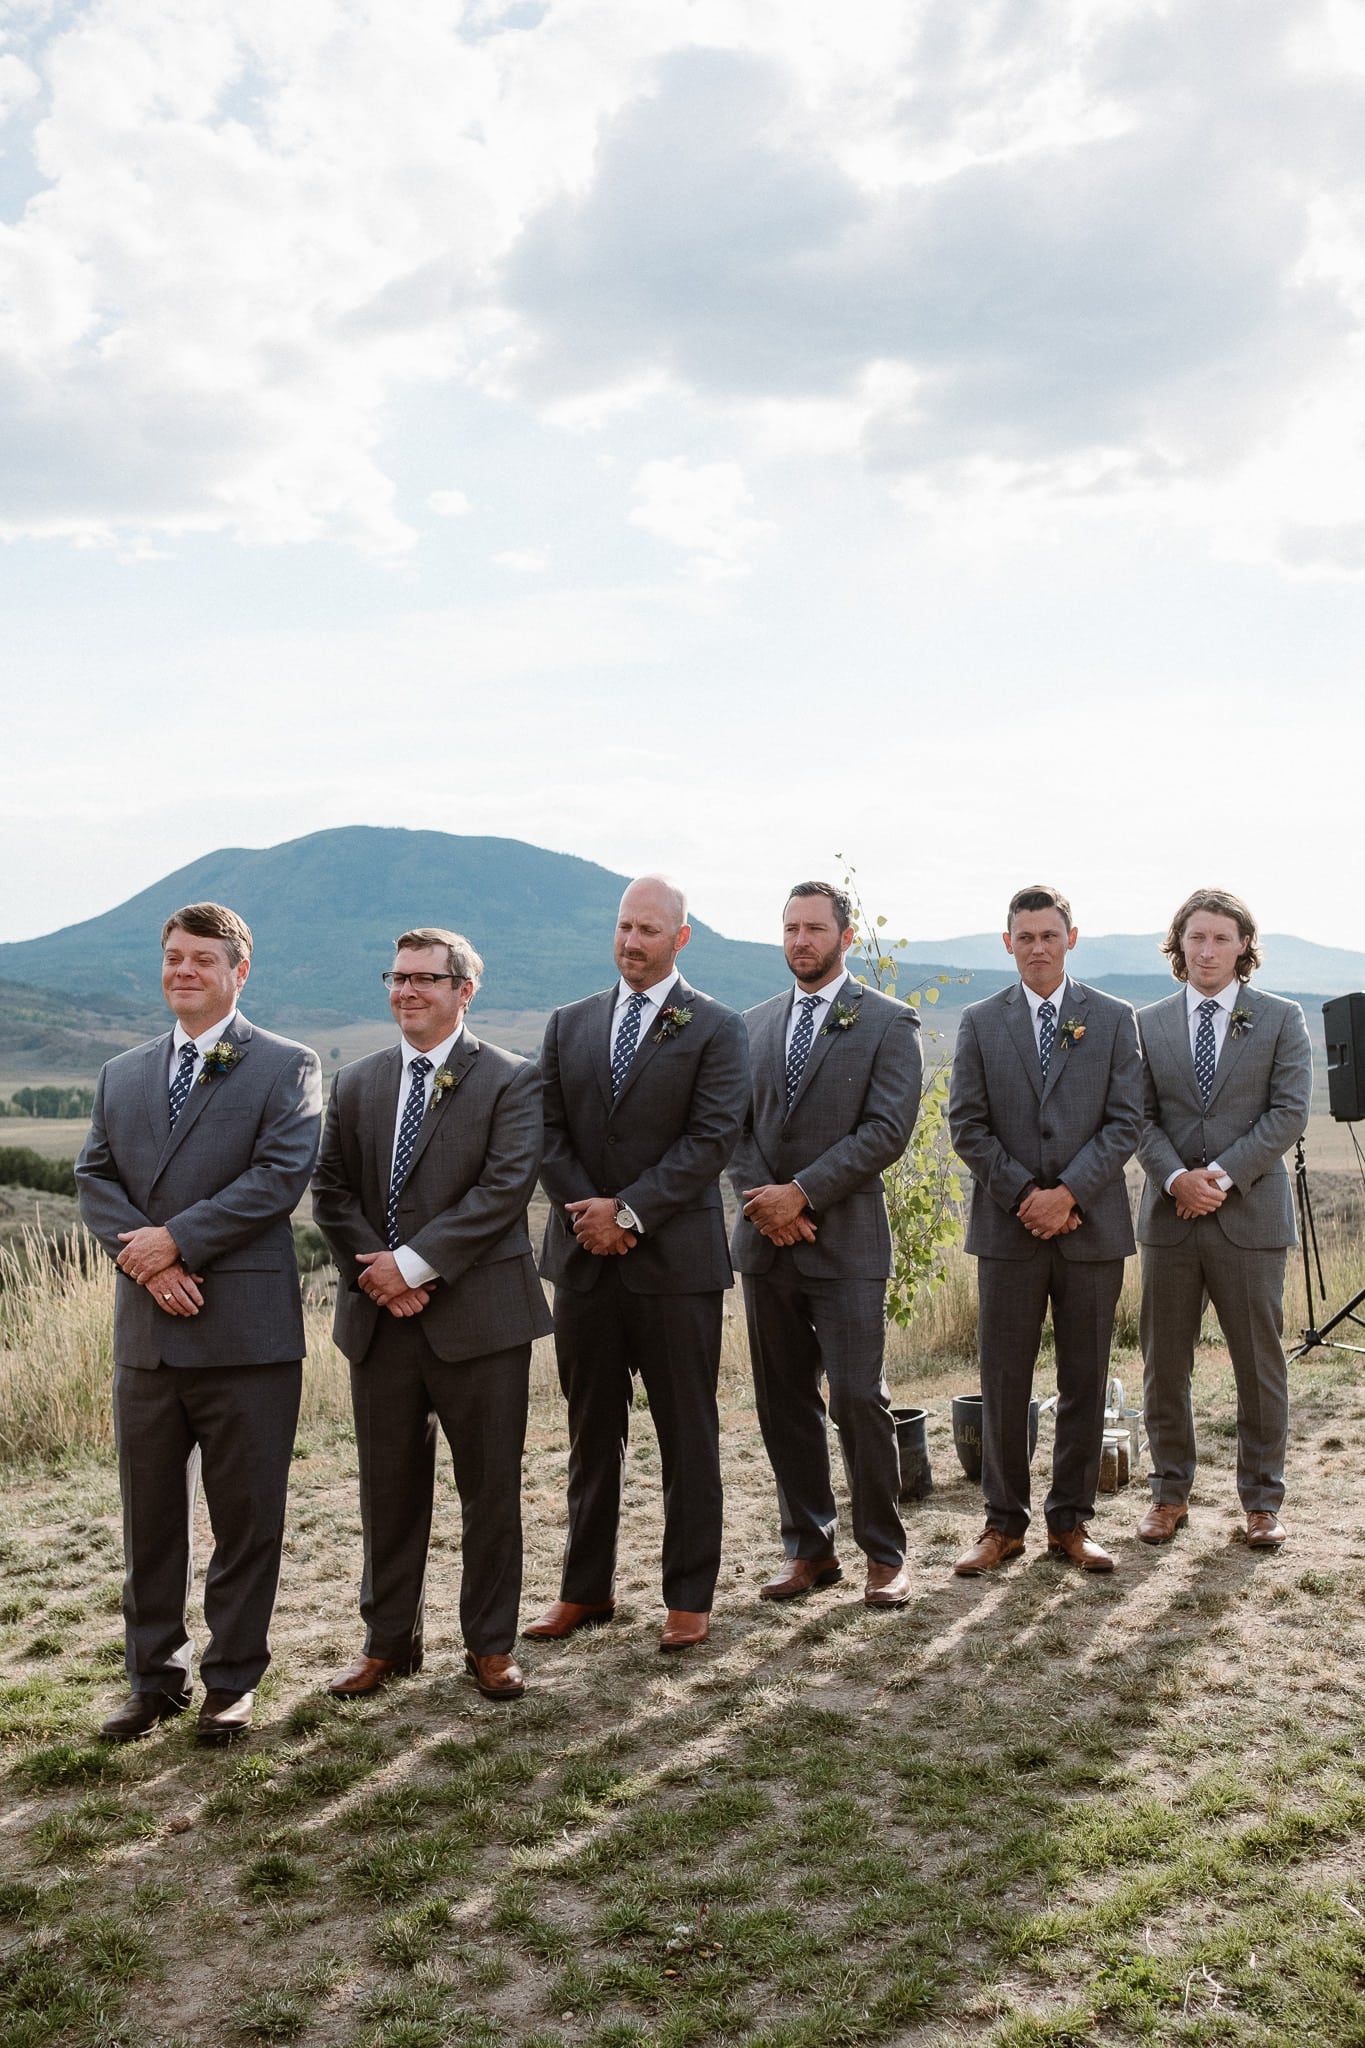 Steamboat Springs wedding photographer, La Joya Dulce wedding, Colorado ranch wedding venues, outdoor wedding ceremony, groomsmen during wedding ceremony